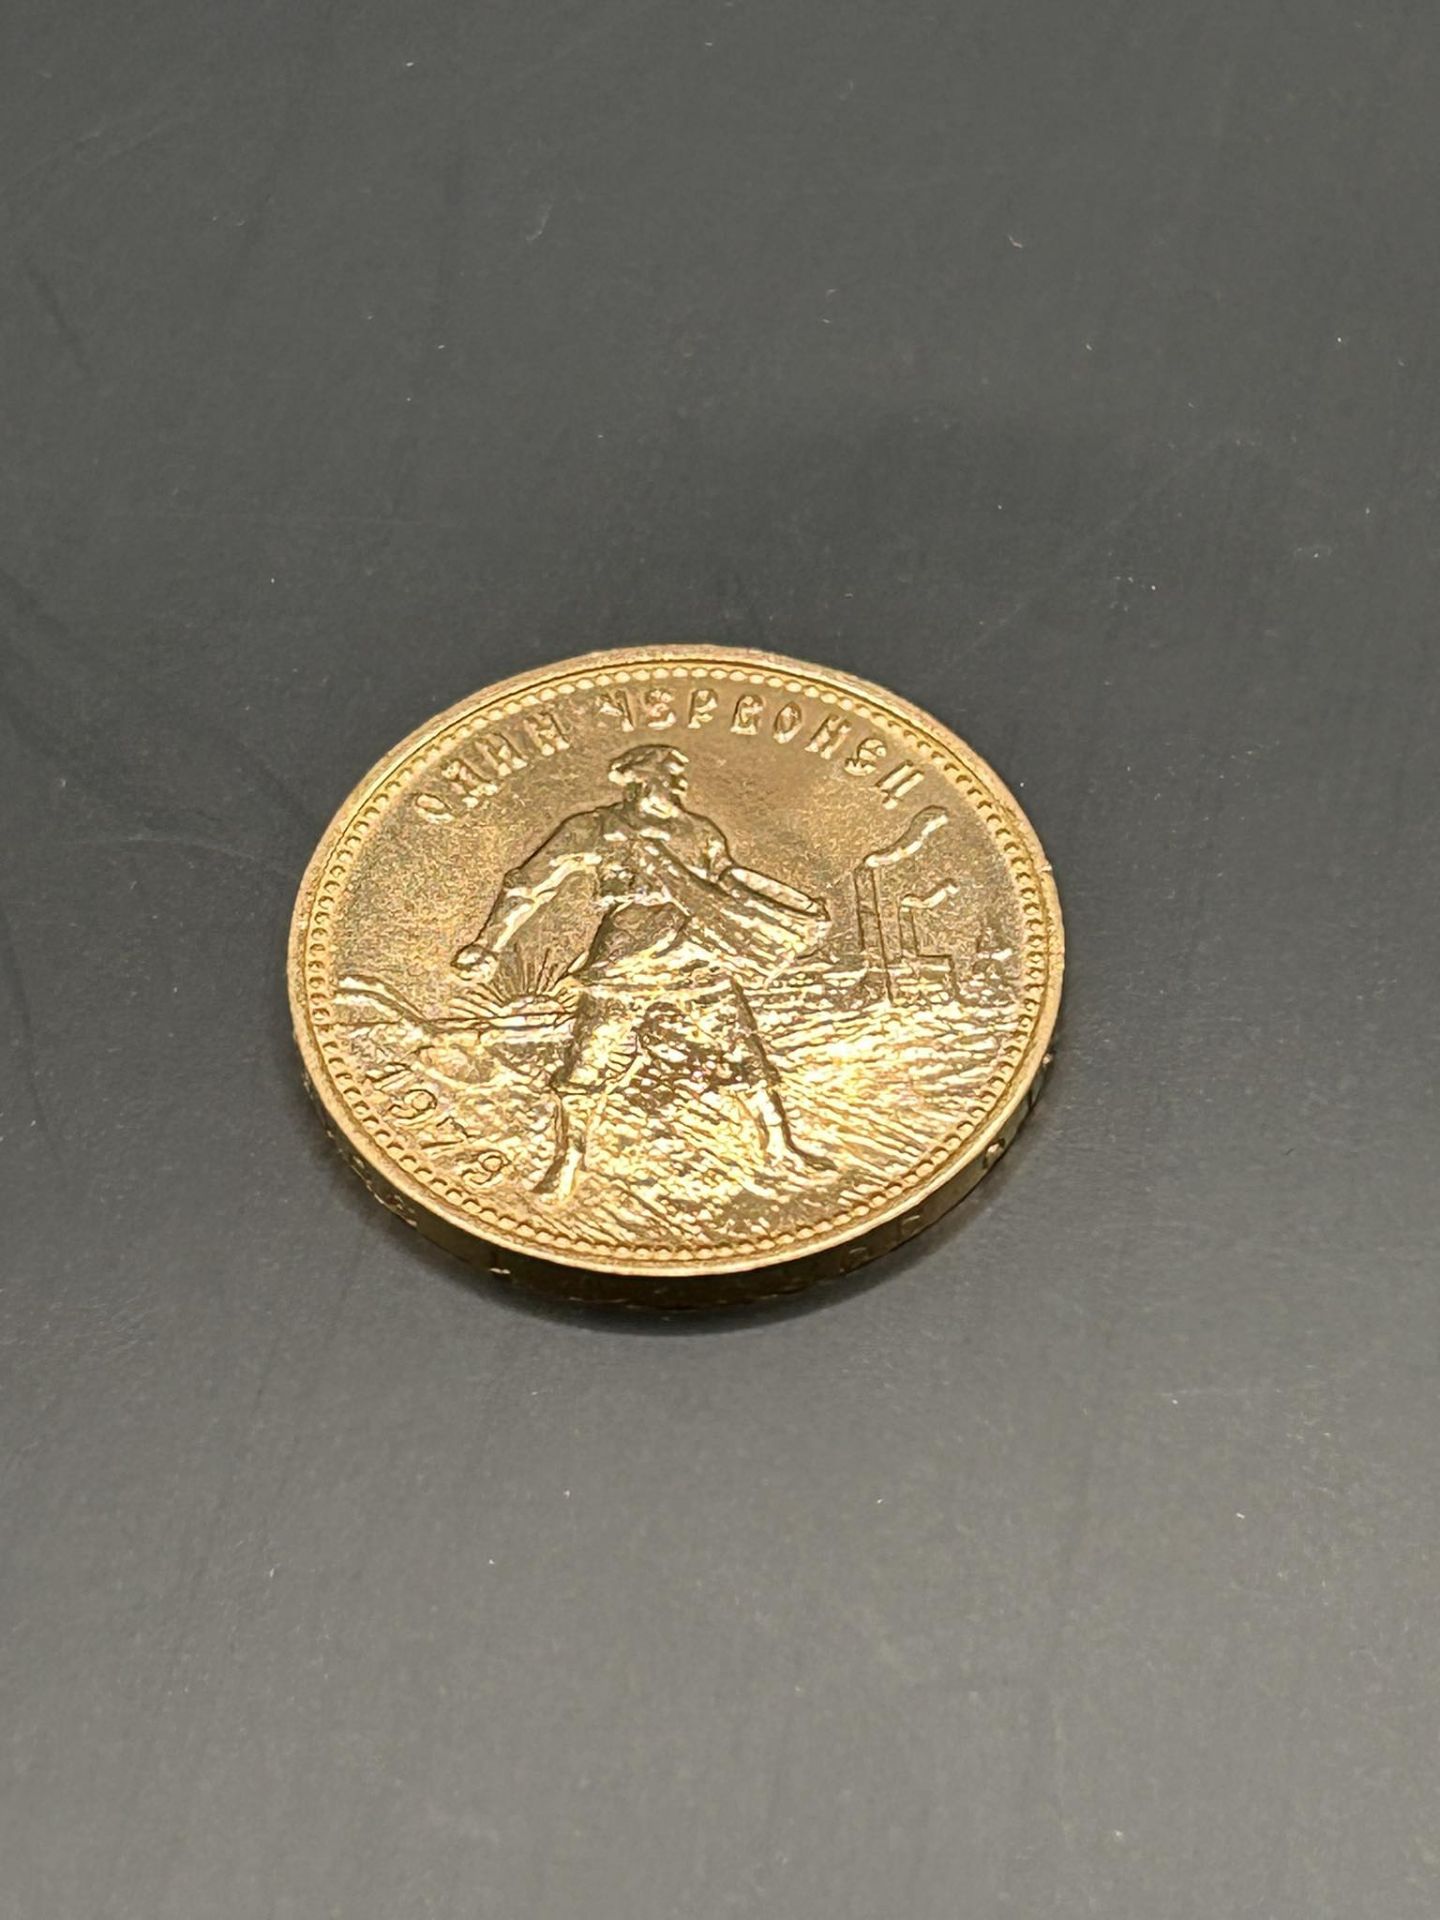 Goldmünze UDSSR - Bild 2 aus 3